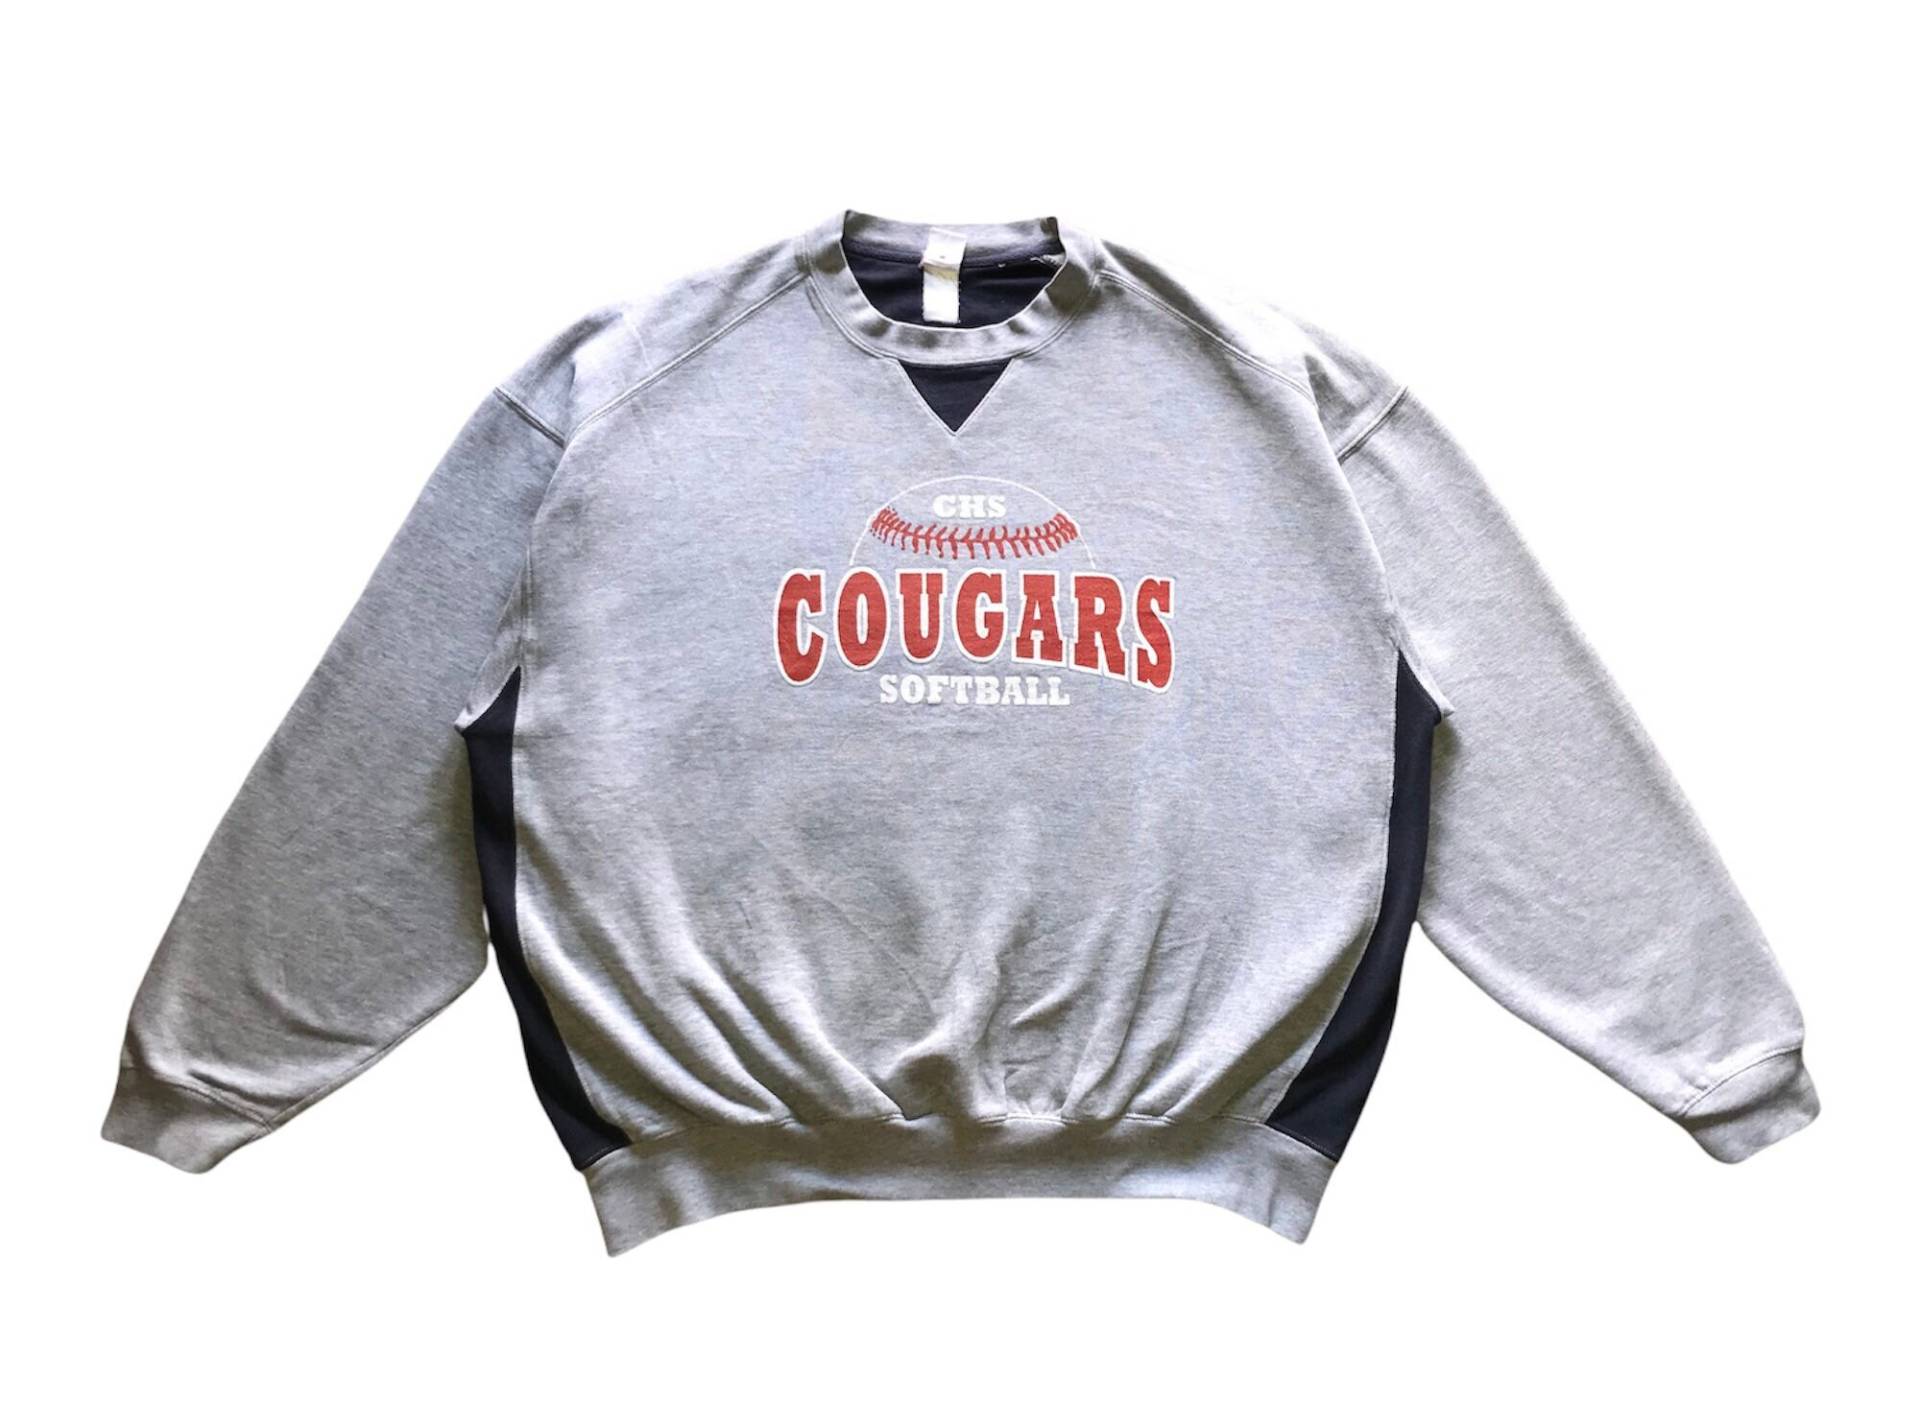 Vintage Sportswear Chs Cougars Softball Spellout Crewneck Sweatshirt Xl Größe von AbeVintageStore